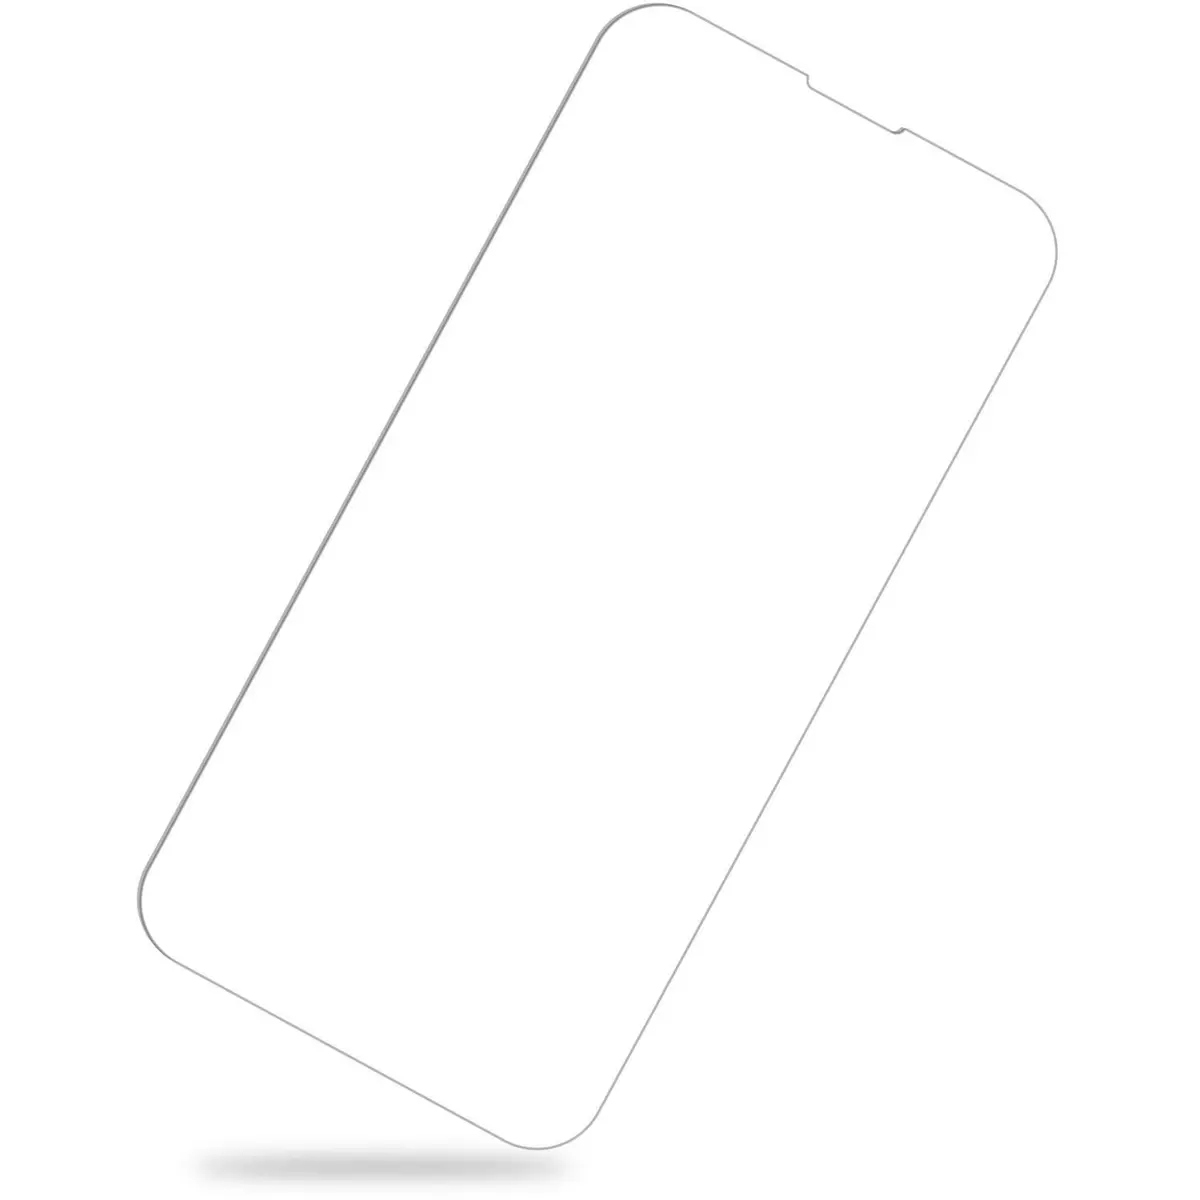 QILIVE Coque et verre trempé pour iPhone 13 - Transparent